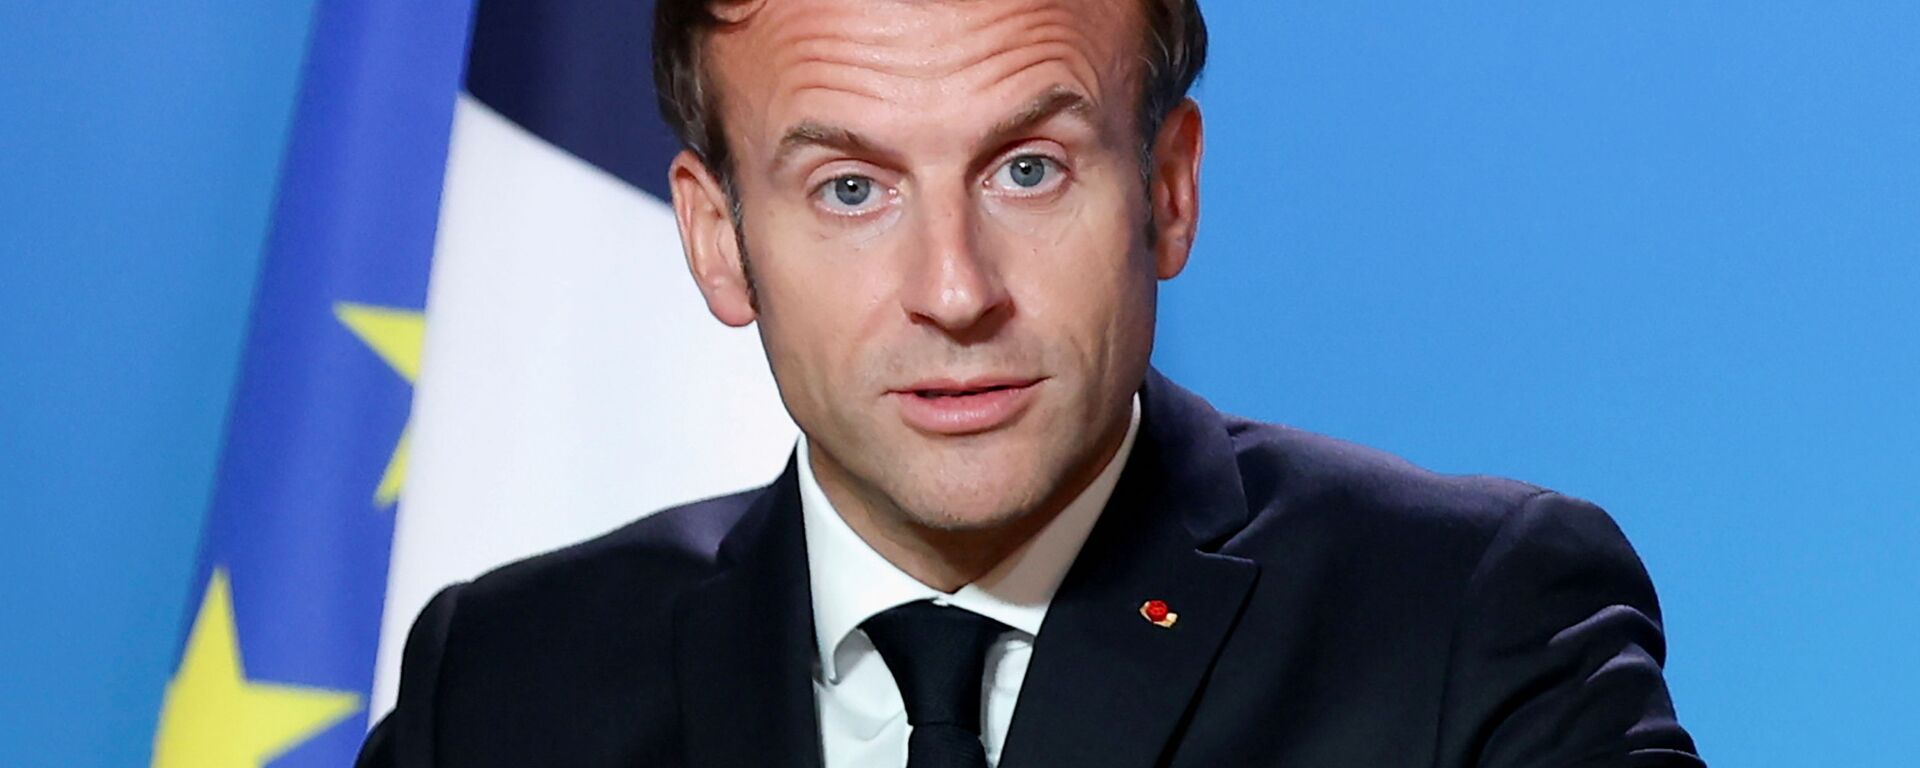 O presidente francês Emmanuel Macron dá uma entrevista coletiva no final do segundo dia de uma reunião dos líderes da União Europeia em Bruxelas, Bélgica, em 22 de outubro de 2021 - Sputnik Brasil, 1920, 30.10.2021